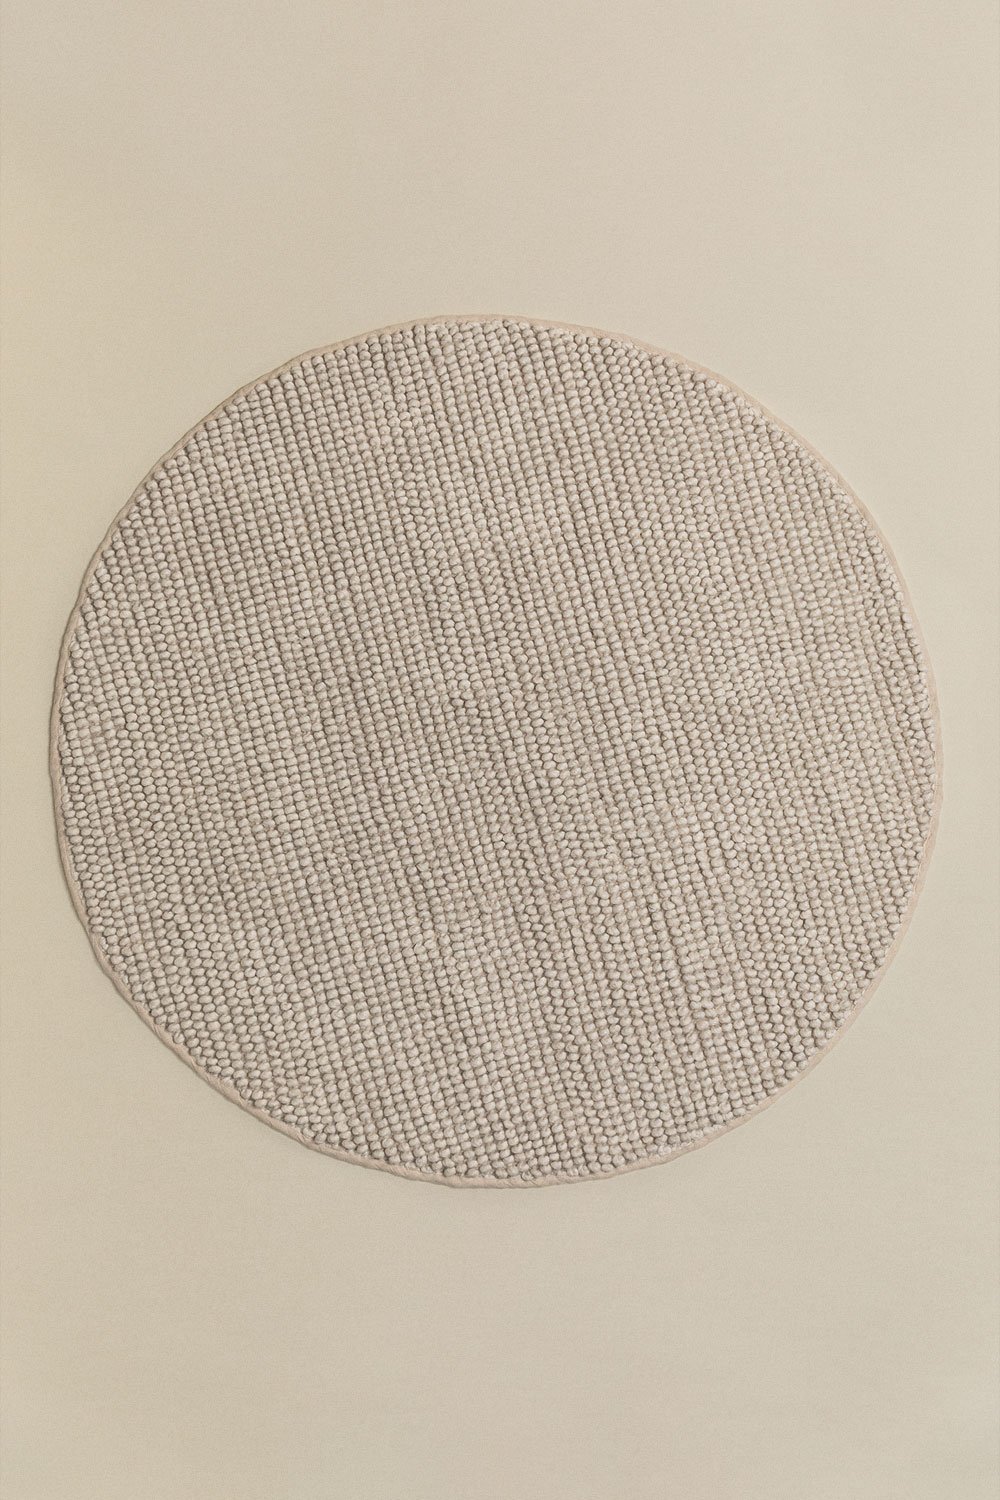 Tappeto rotondo (Ø120 cm) Rambin, immagine della galleria 2